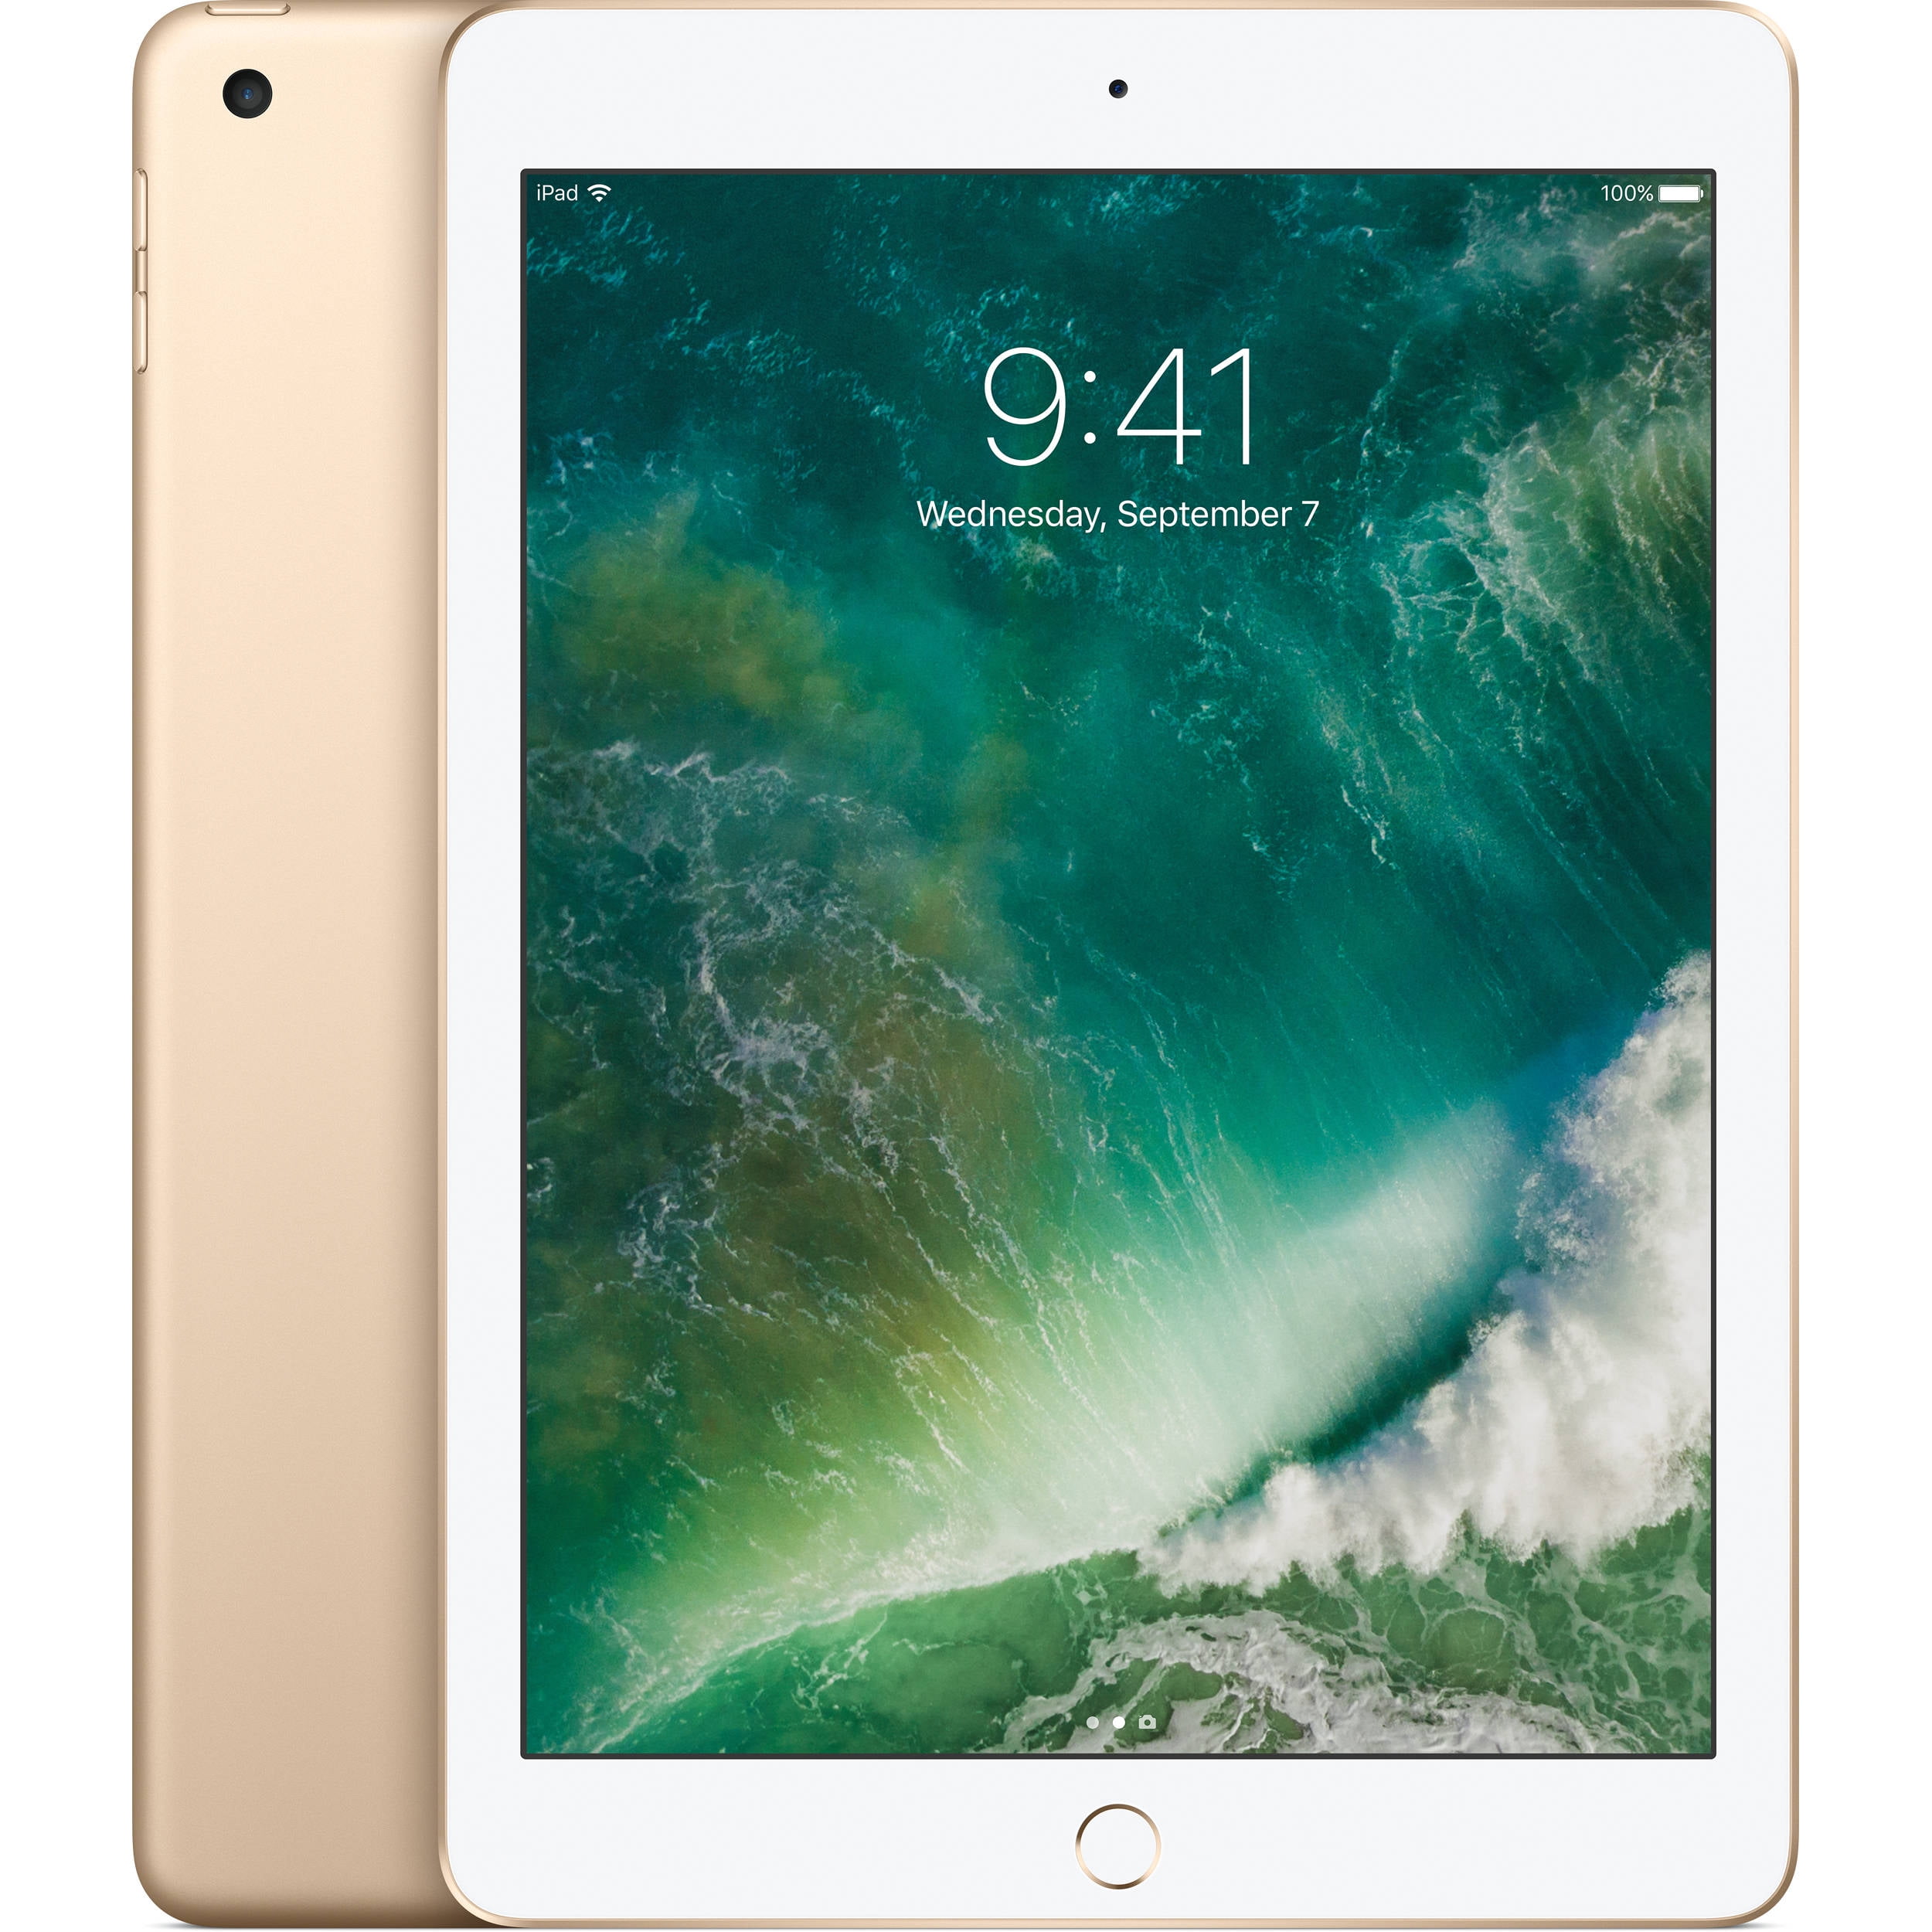 Restored Apple iPad Generation 32GB Wi-Fi - Gold (Refurbished) - Walmart.com